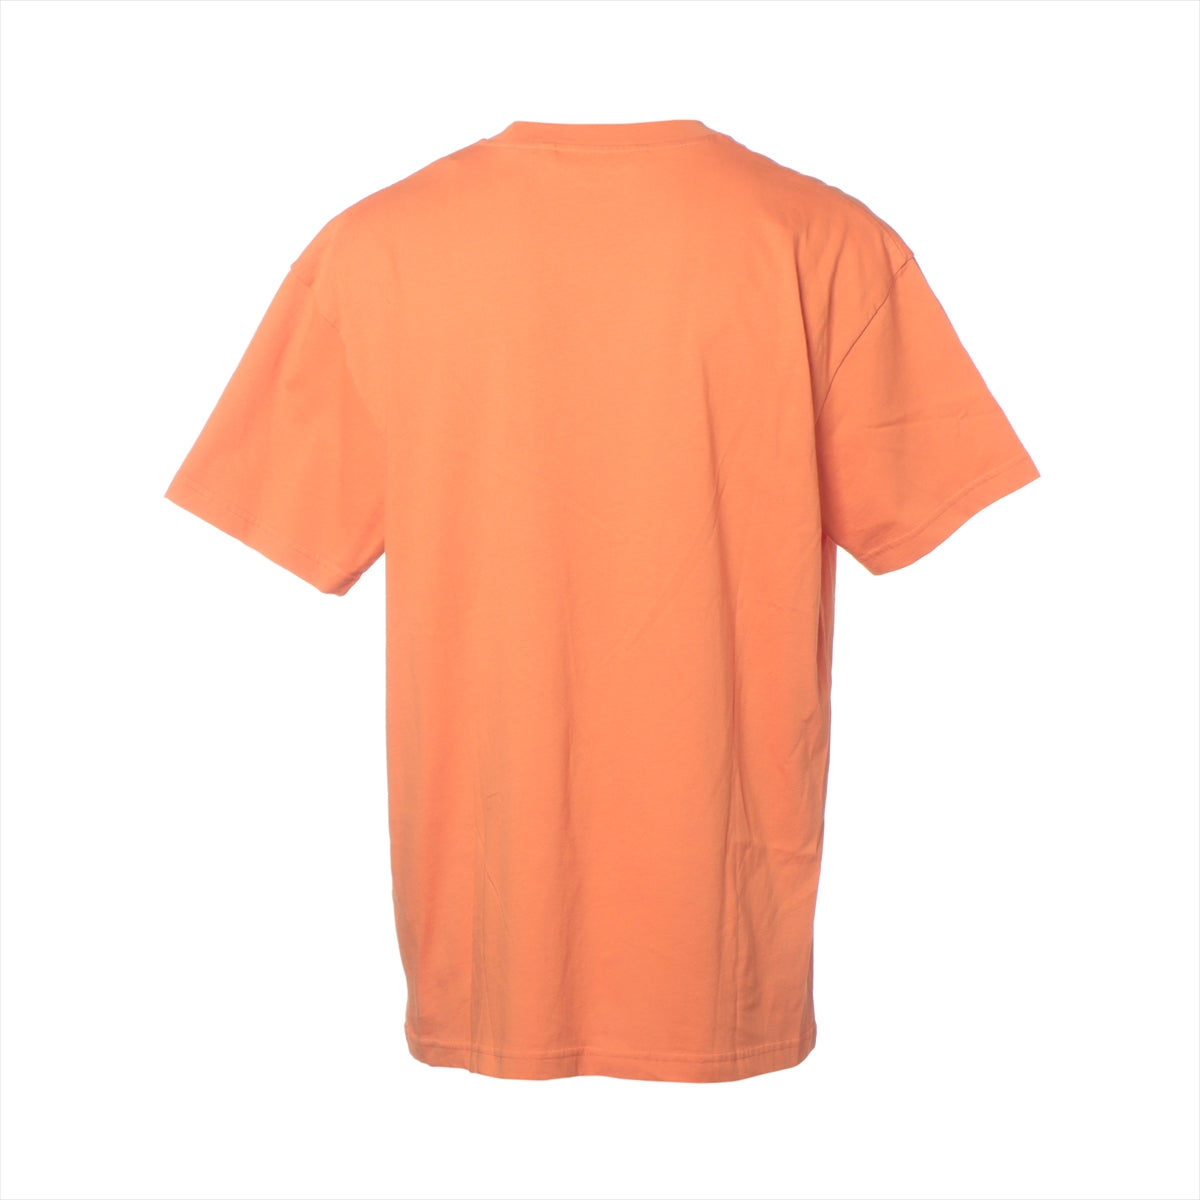 モンクレールジーニアス 21年 コットン Tシャツ L メンズ オレンジ  H10928C00011 809KL